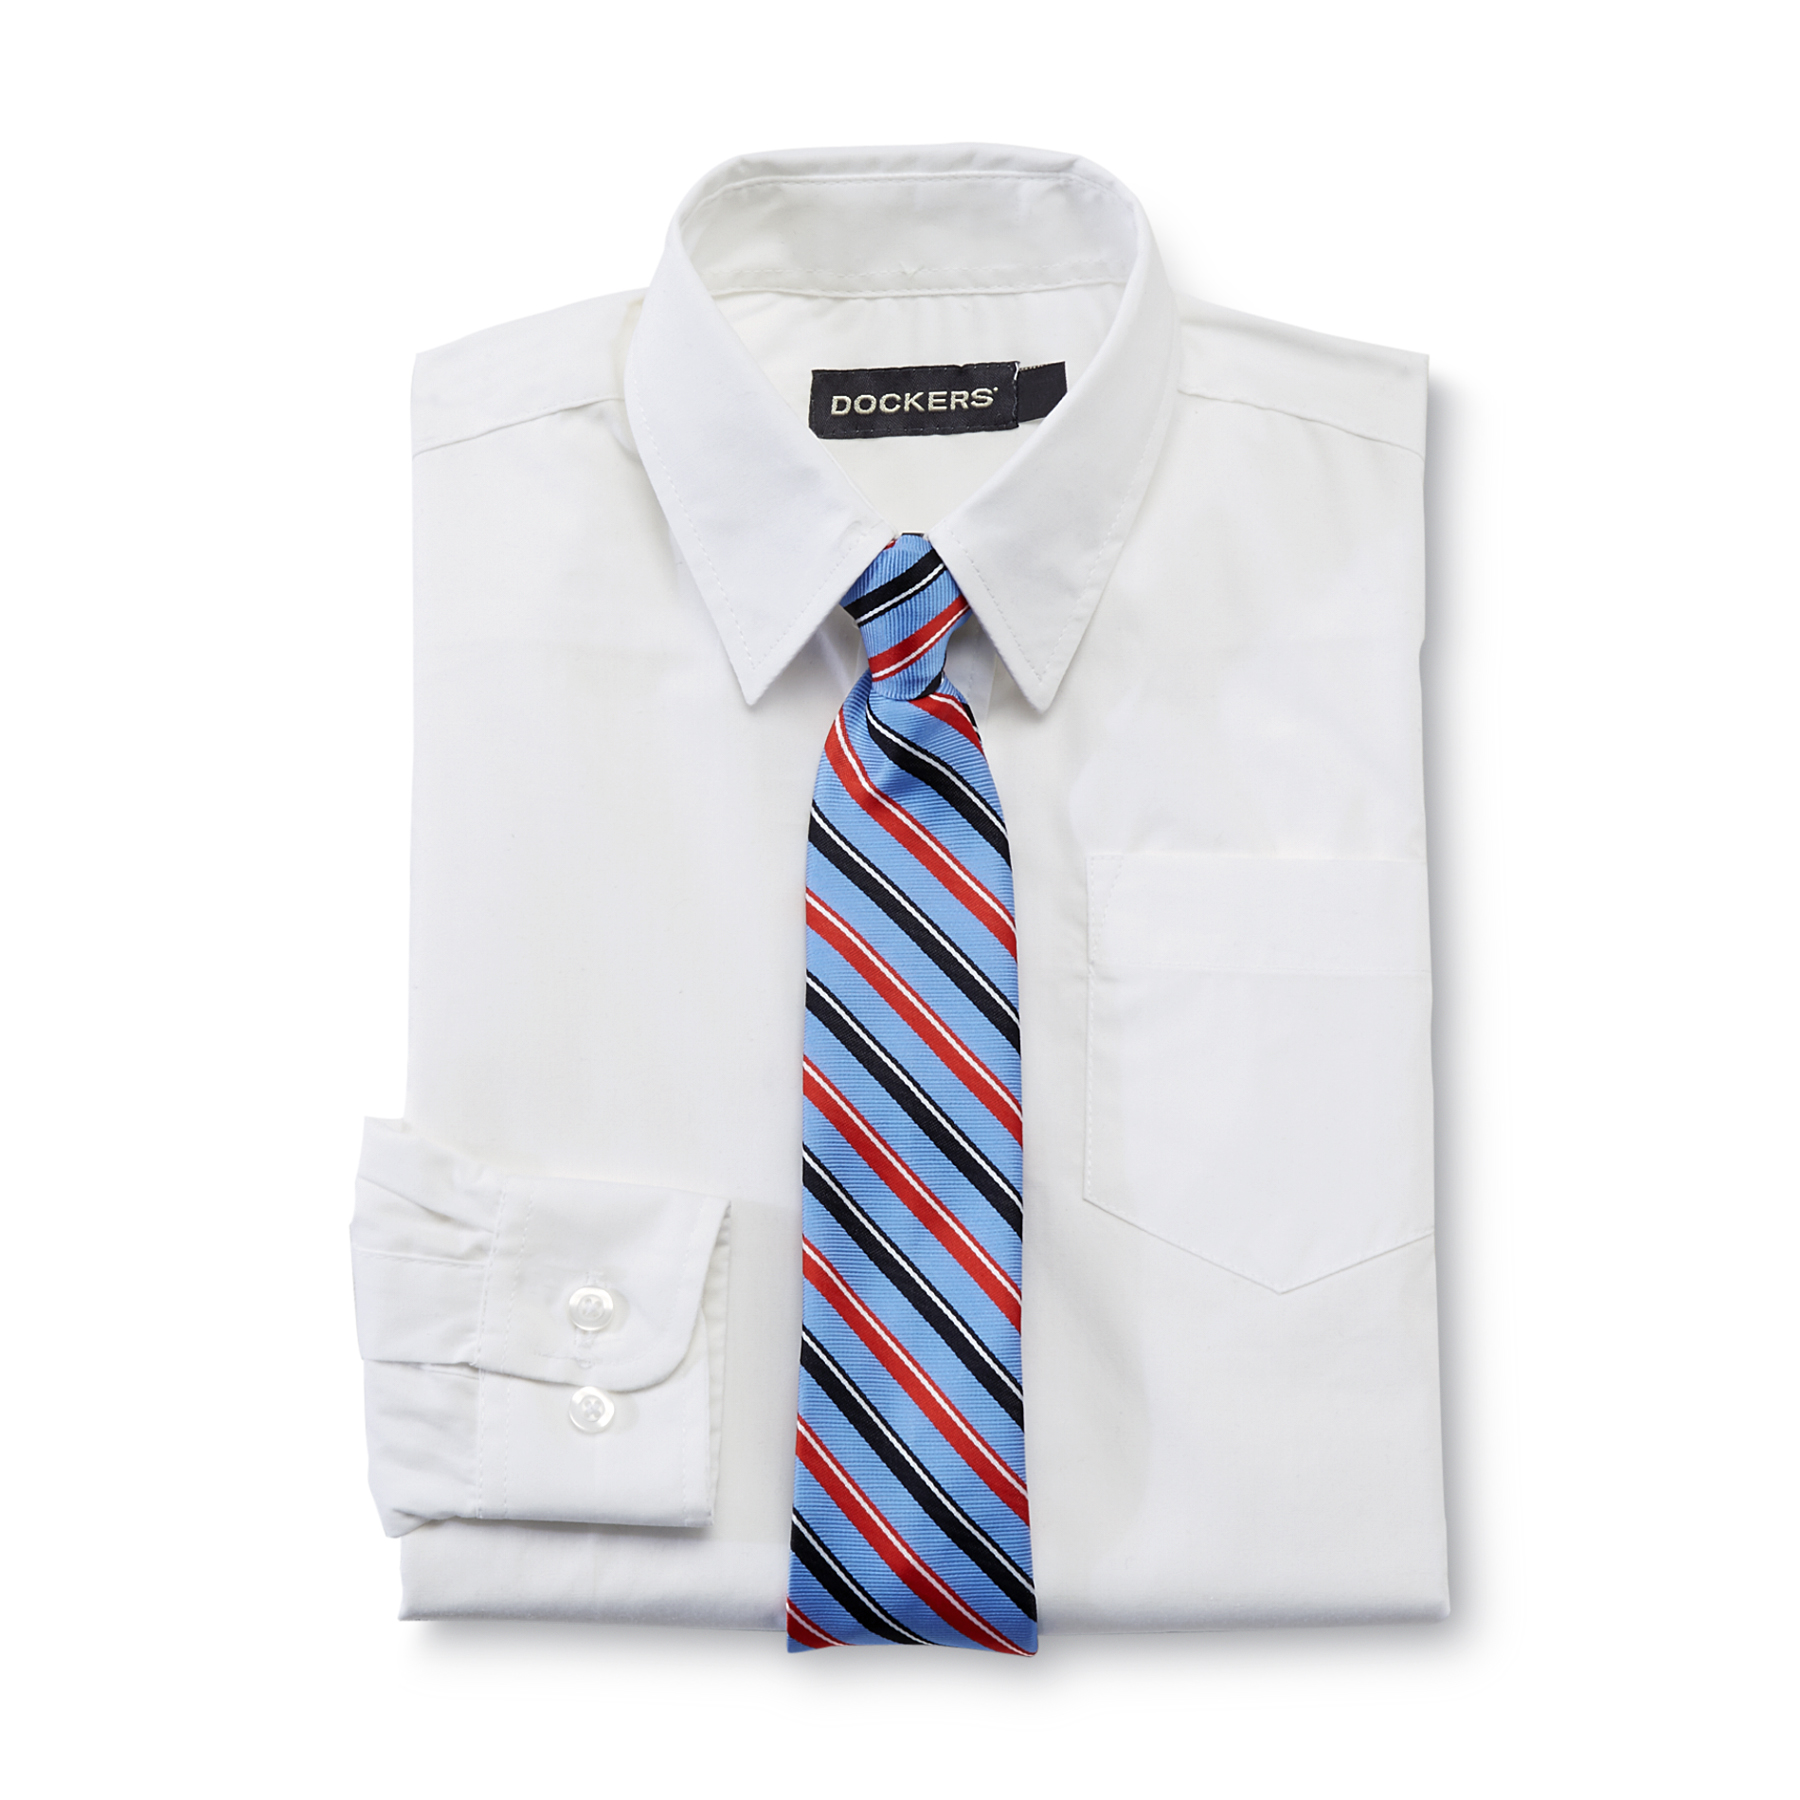 Dockers Boy's Dress Shirt & Striped Tie